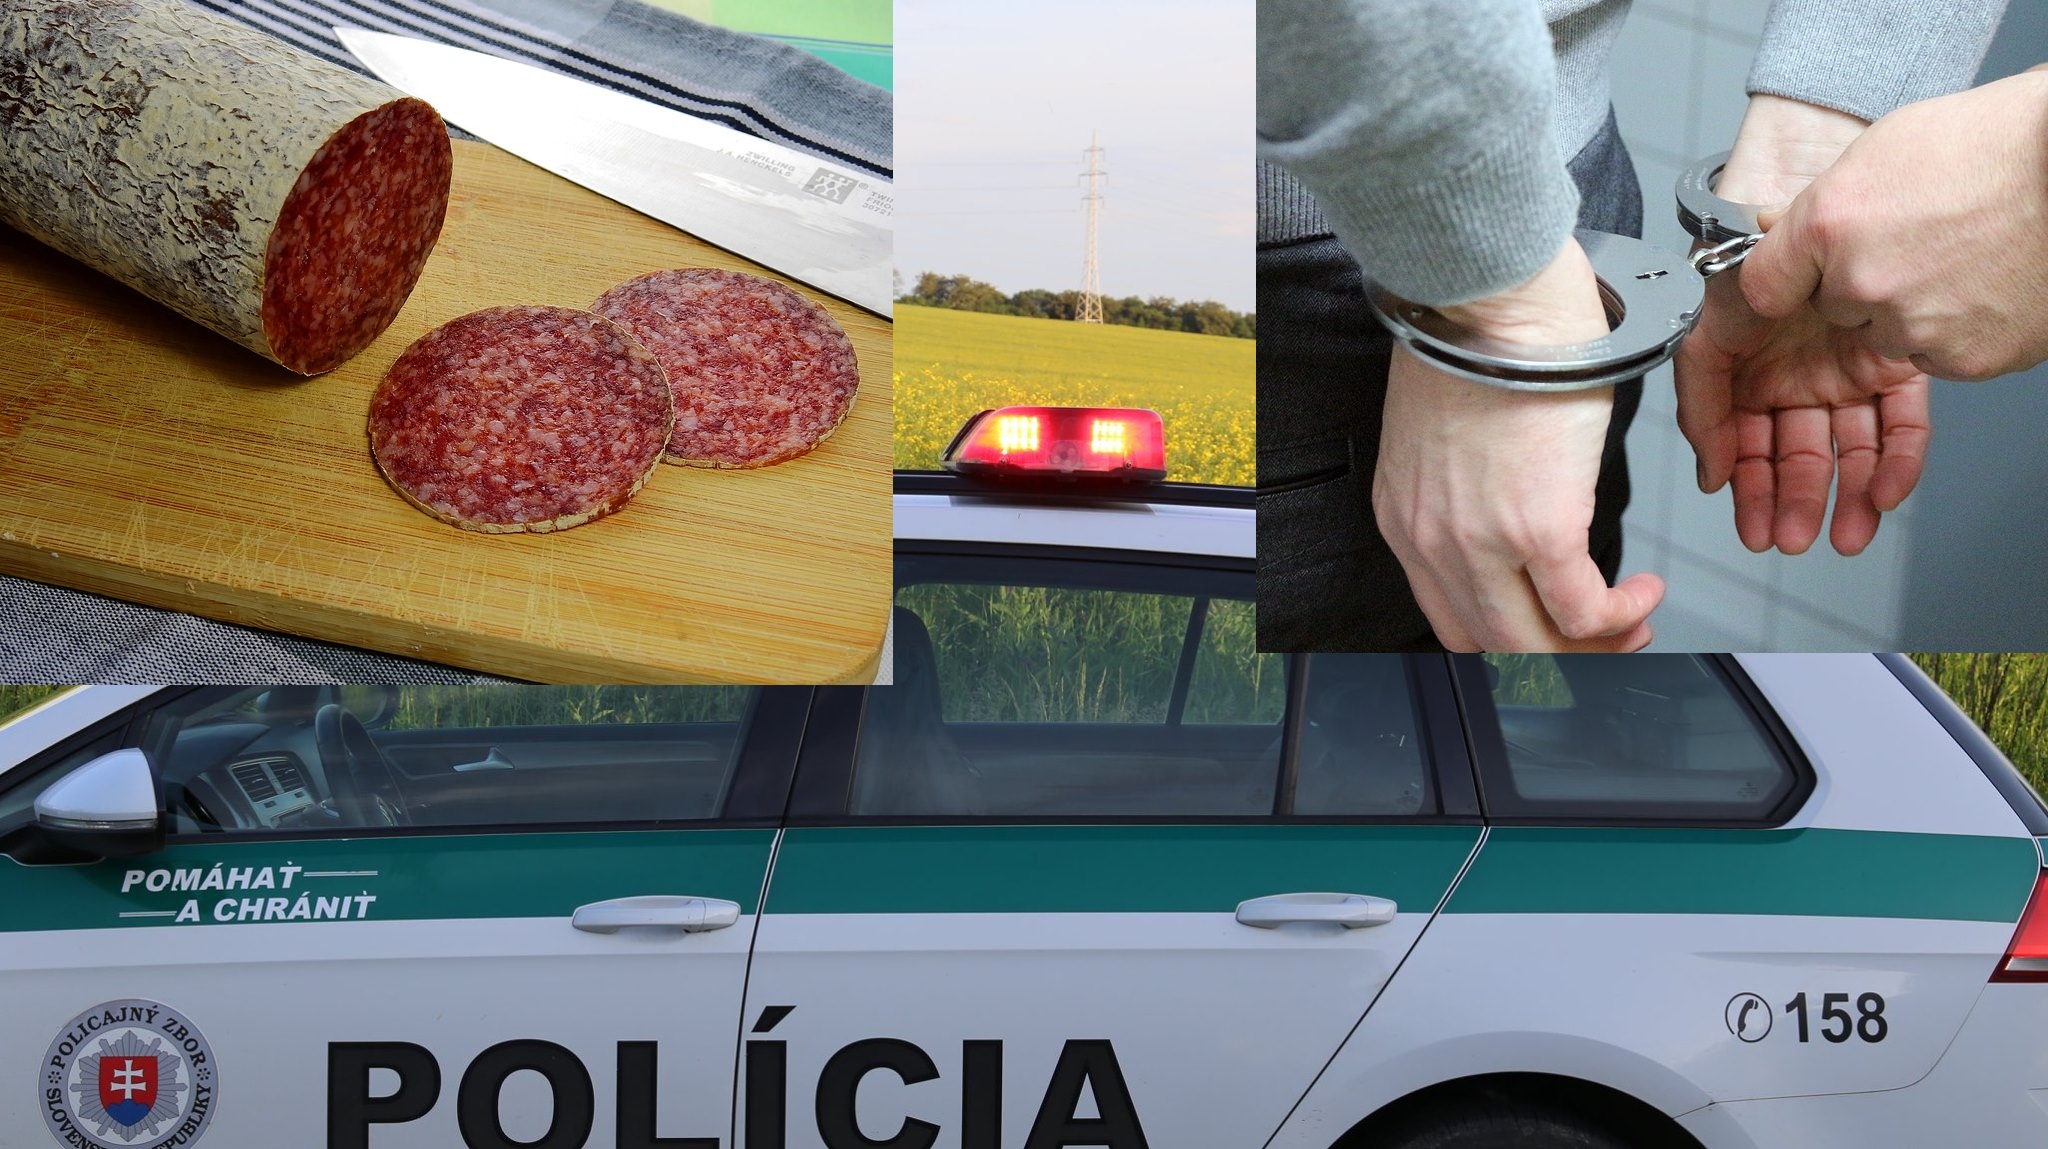 Kuriózny prípad z Košíc - muž obložil policajné auto salámom - po agresívnom zakončení skončil vo väzbe